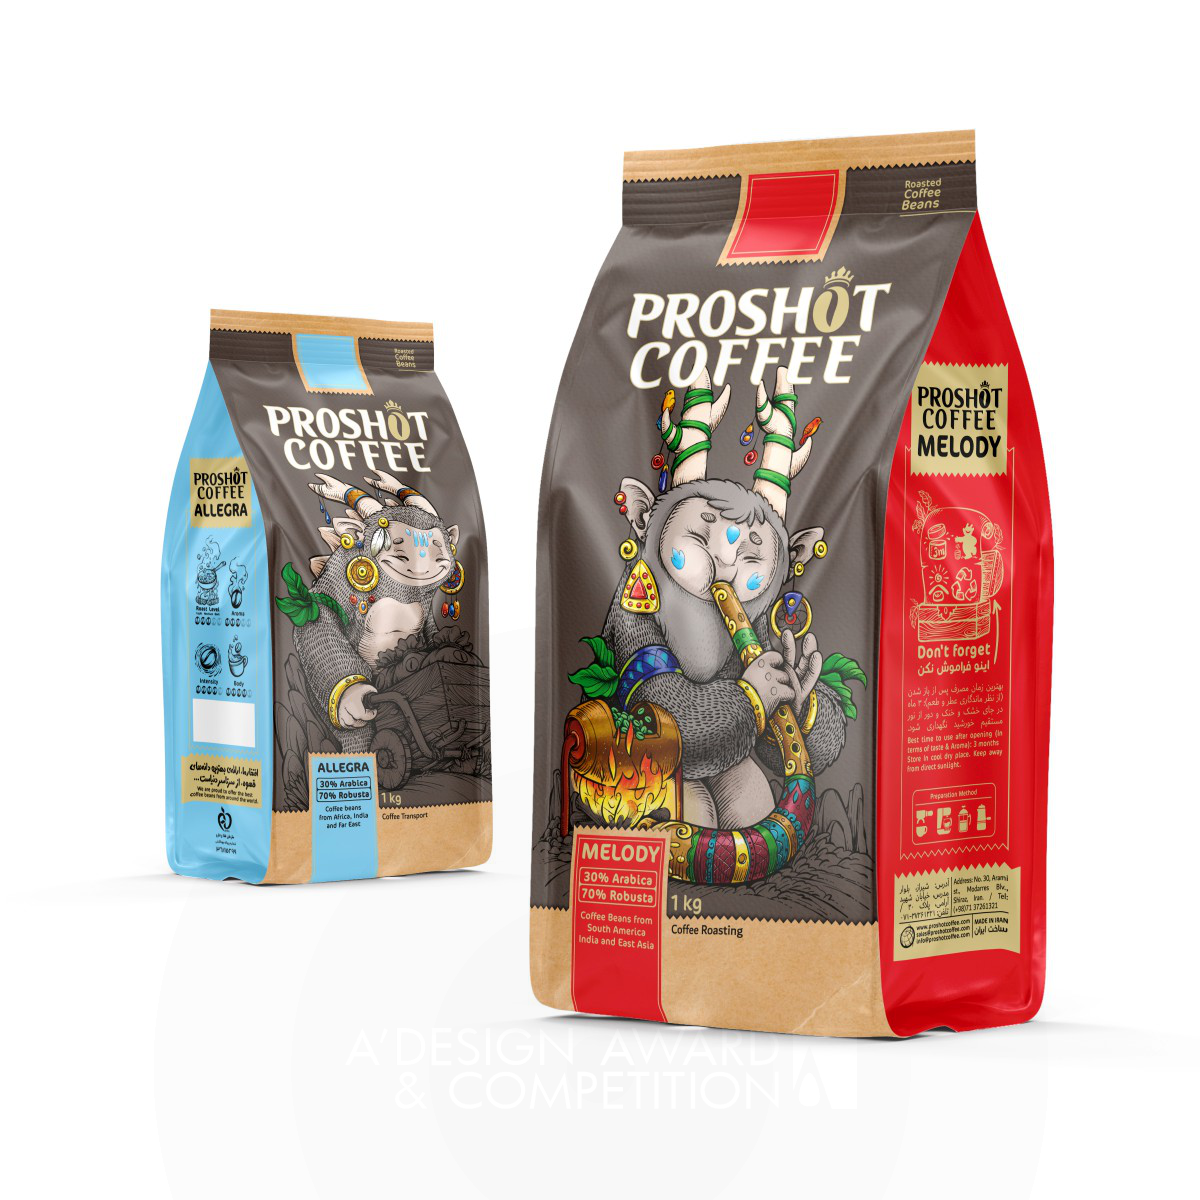 Proshot Coffee: Eine revolutionäre Kaffeeverpackung, die die Fantasie anregt